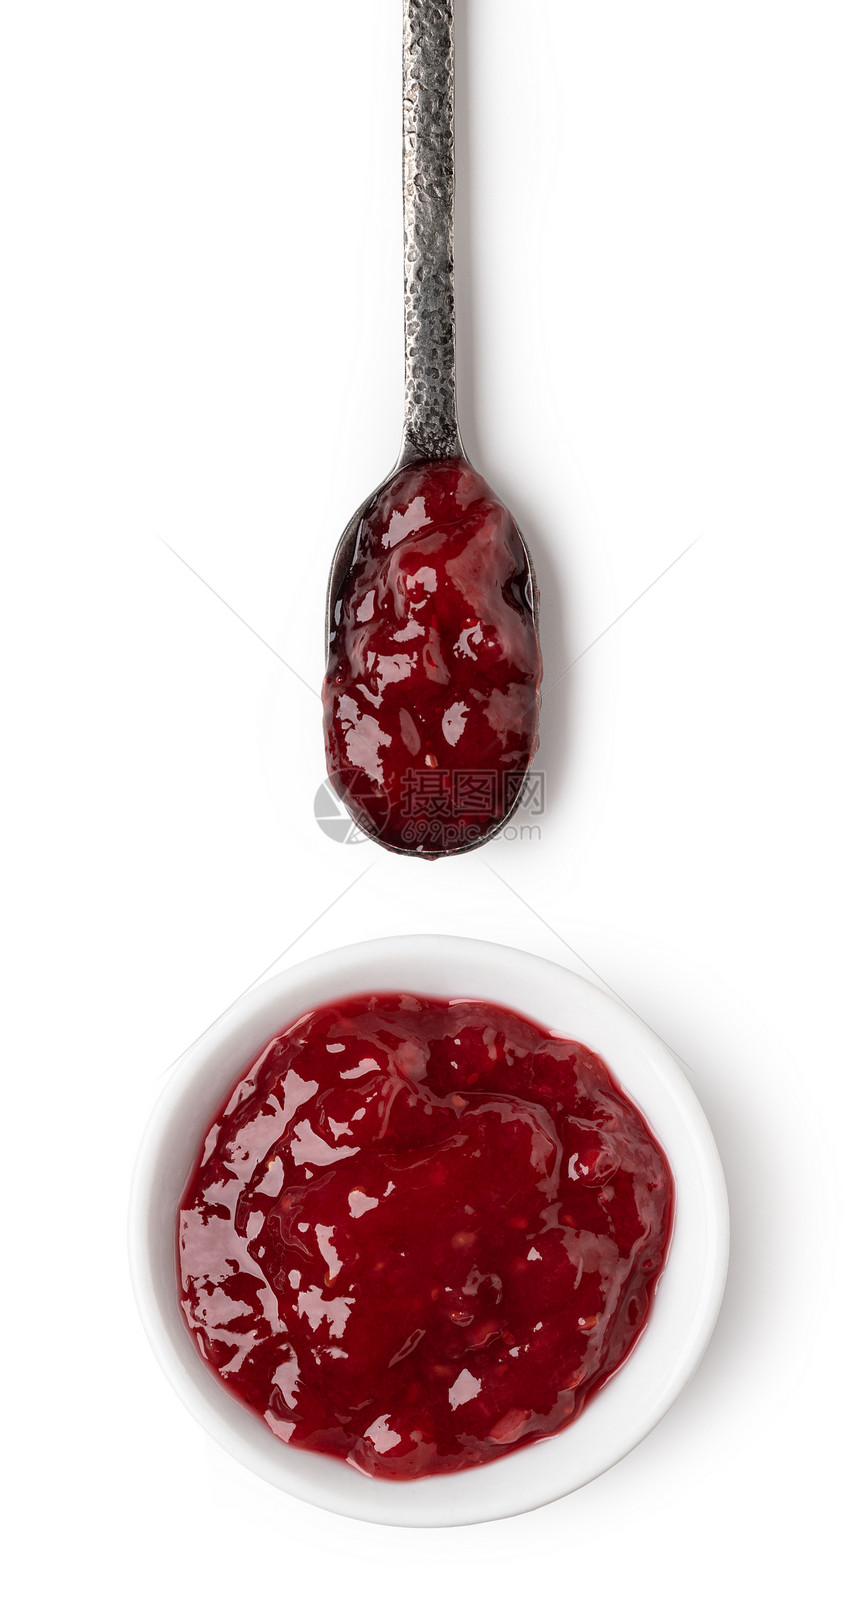 小玻璃碗和一勺红莓果酱图片